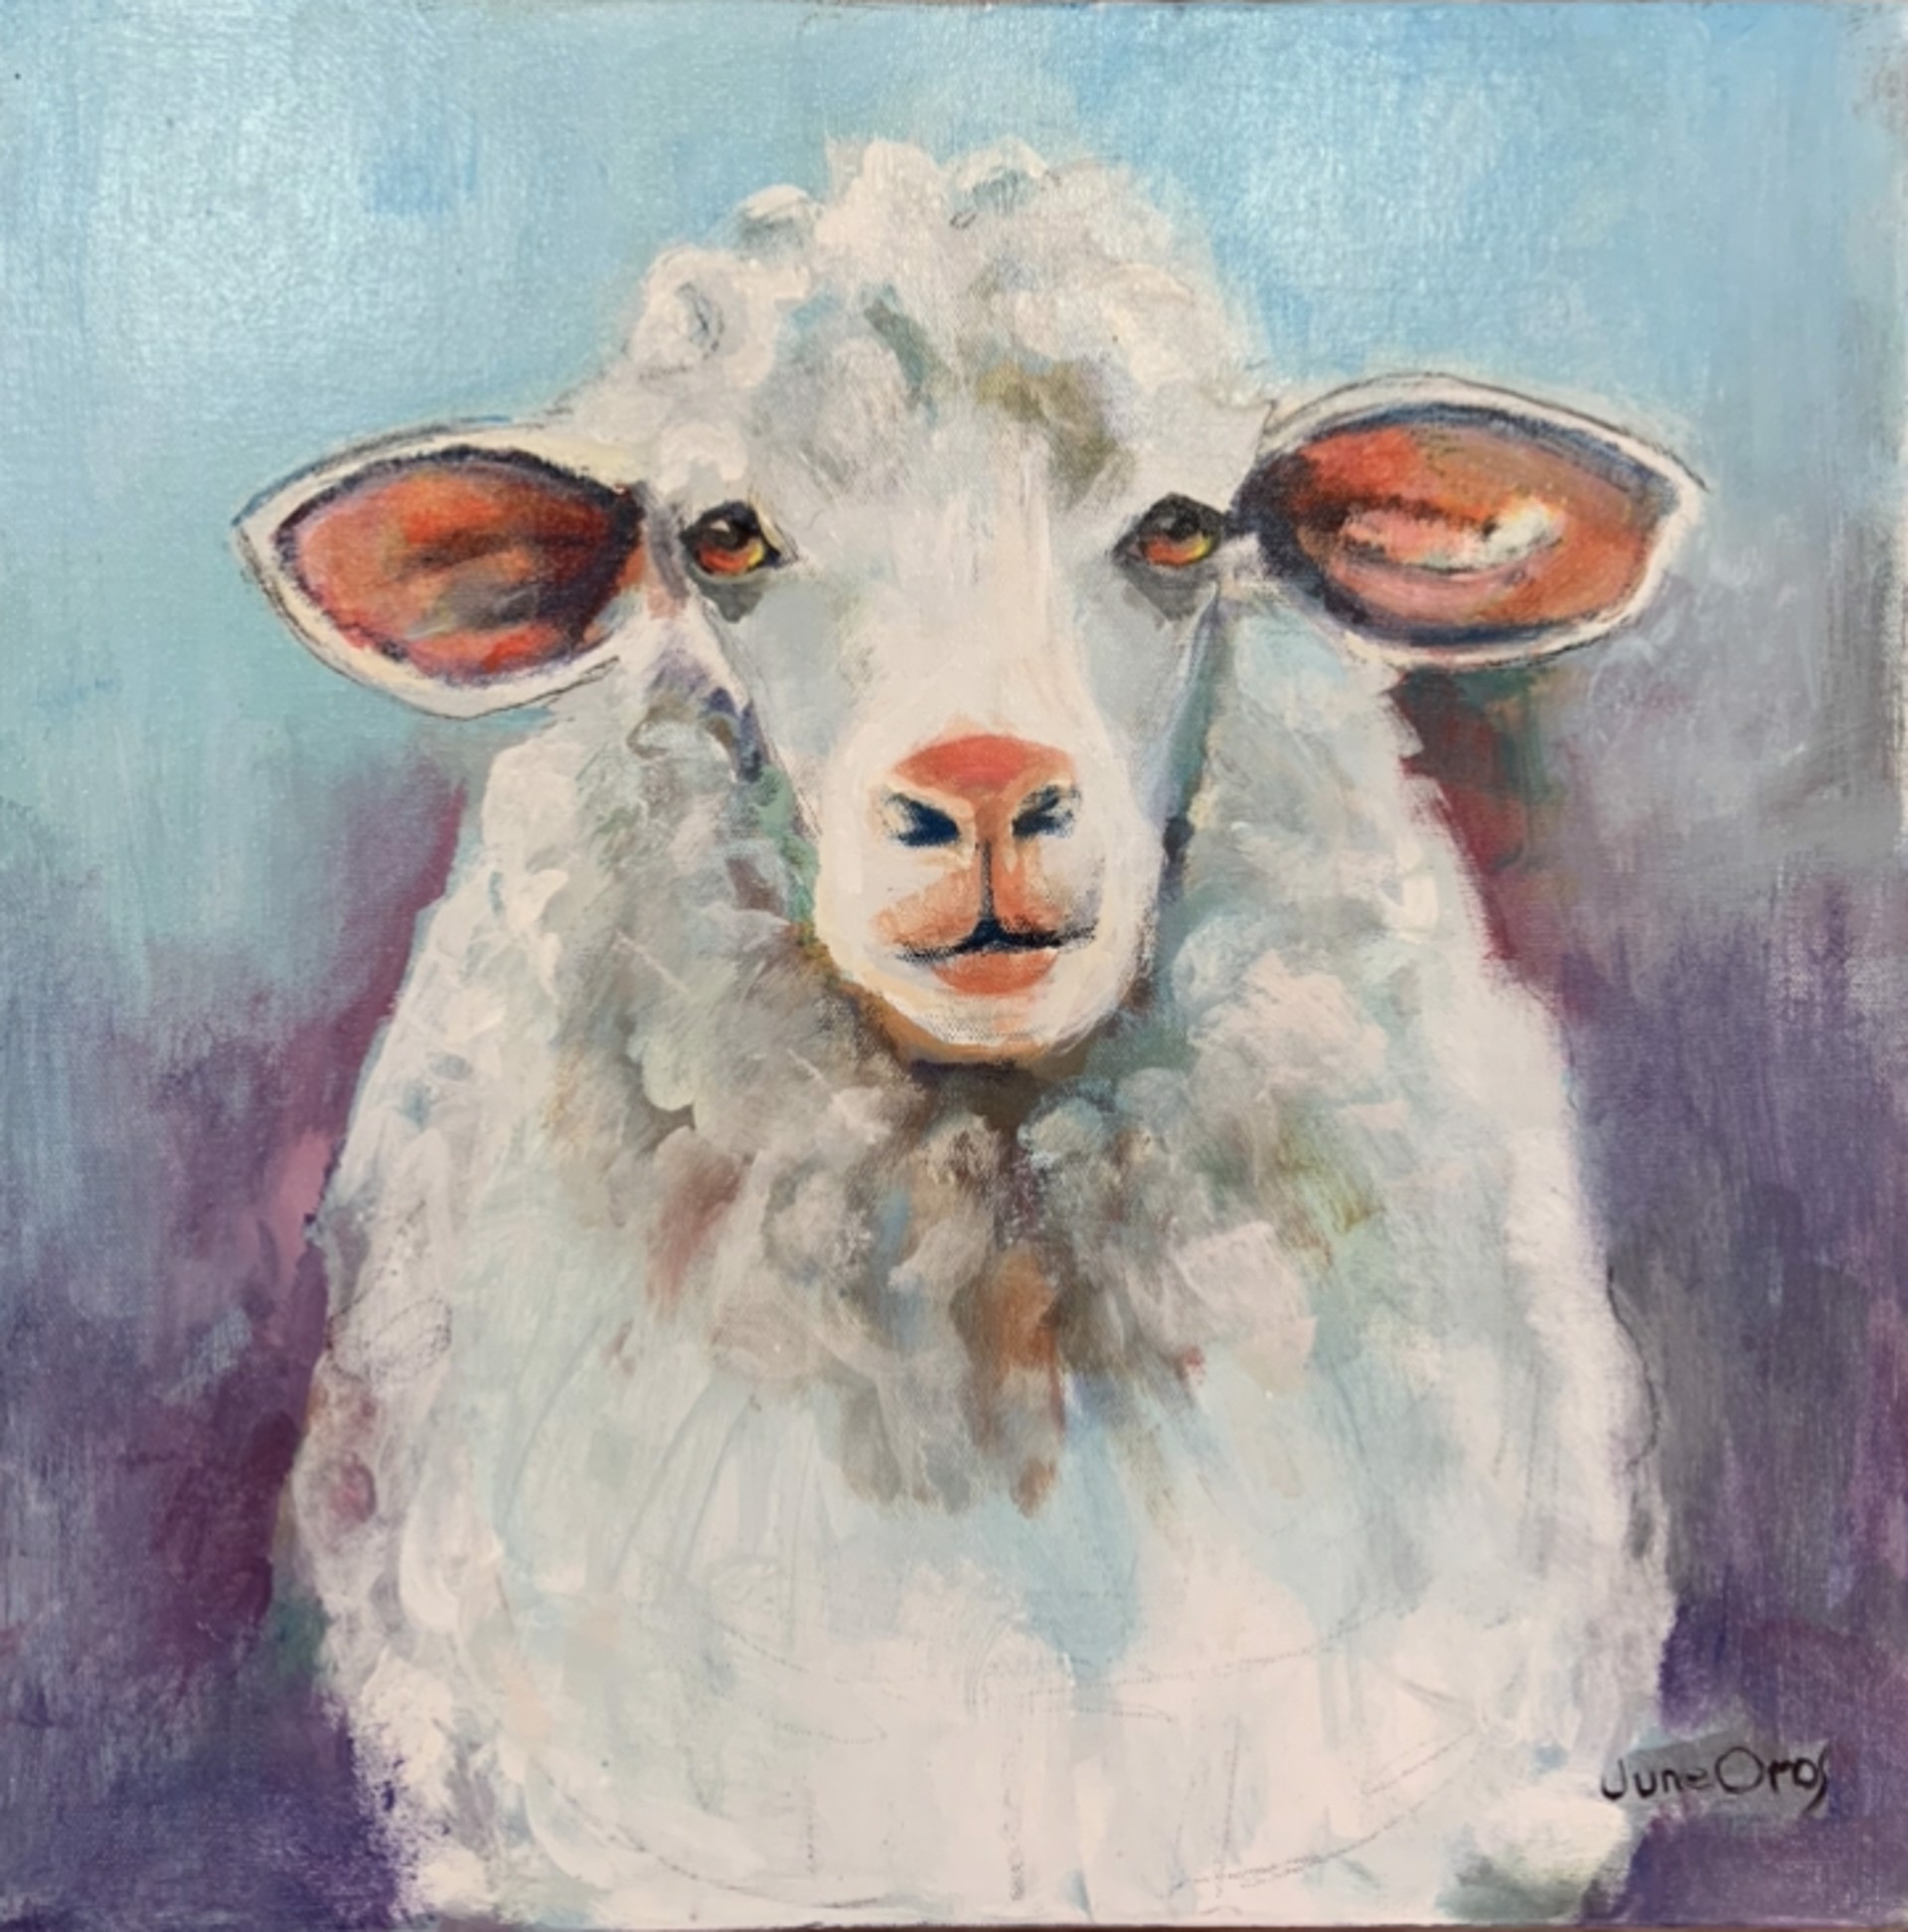 Sheepish by June Oros